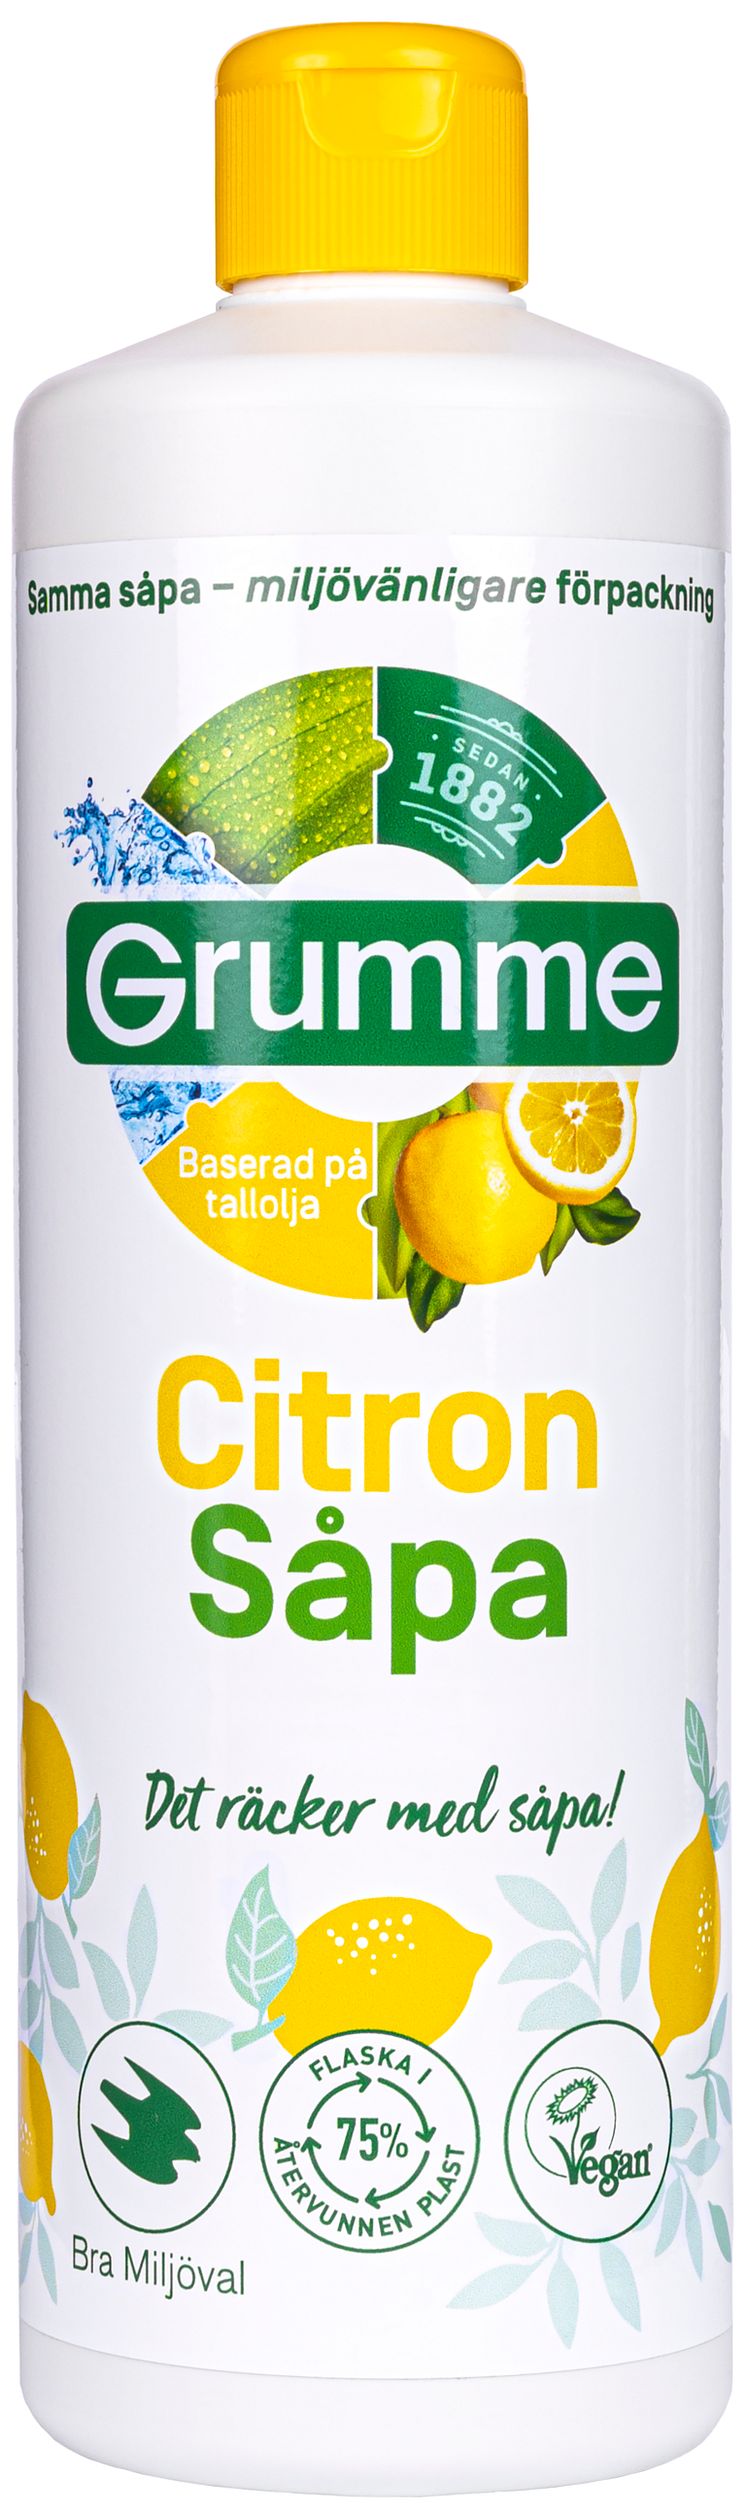 citron_såpa